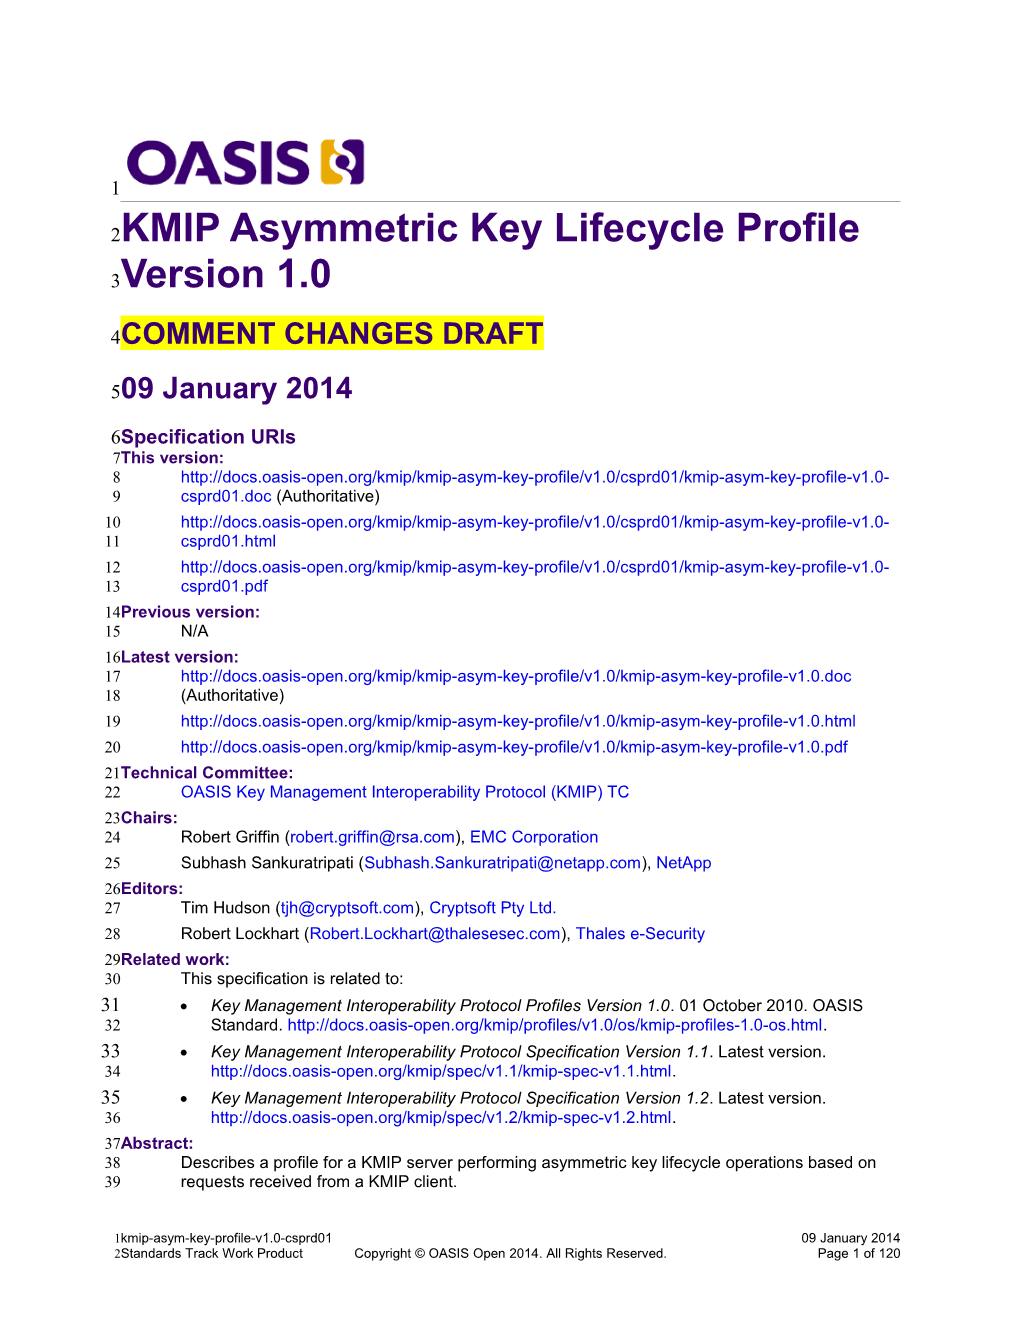 KMIP Asymmetric Key Lifecycle Profile Version 1.0